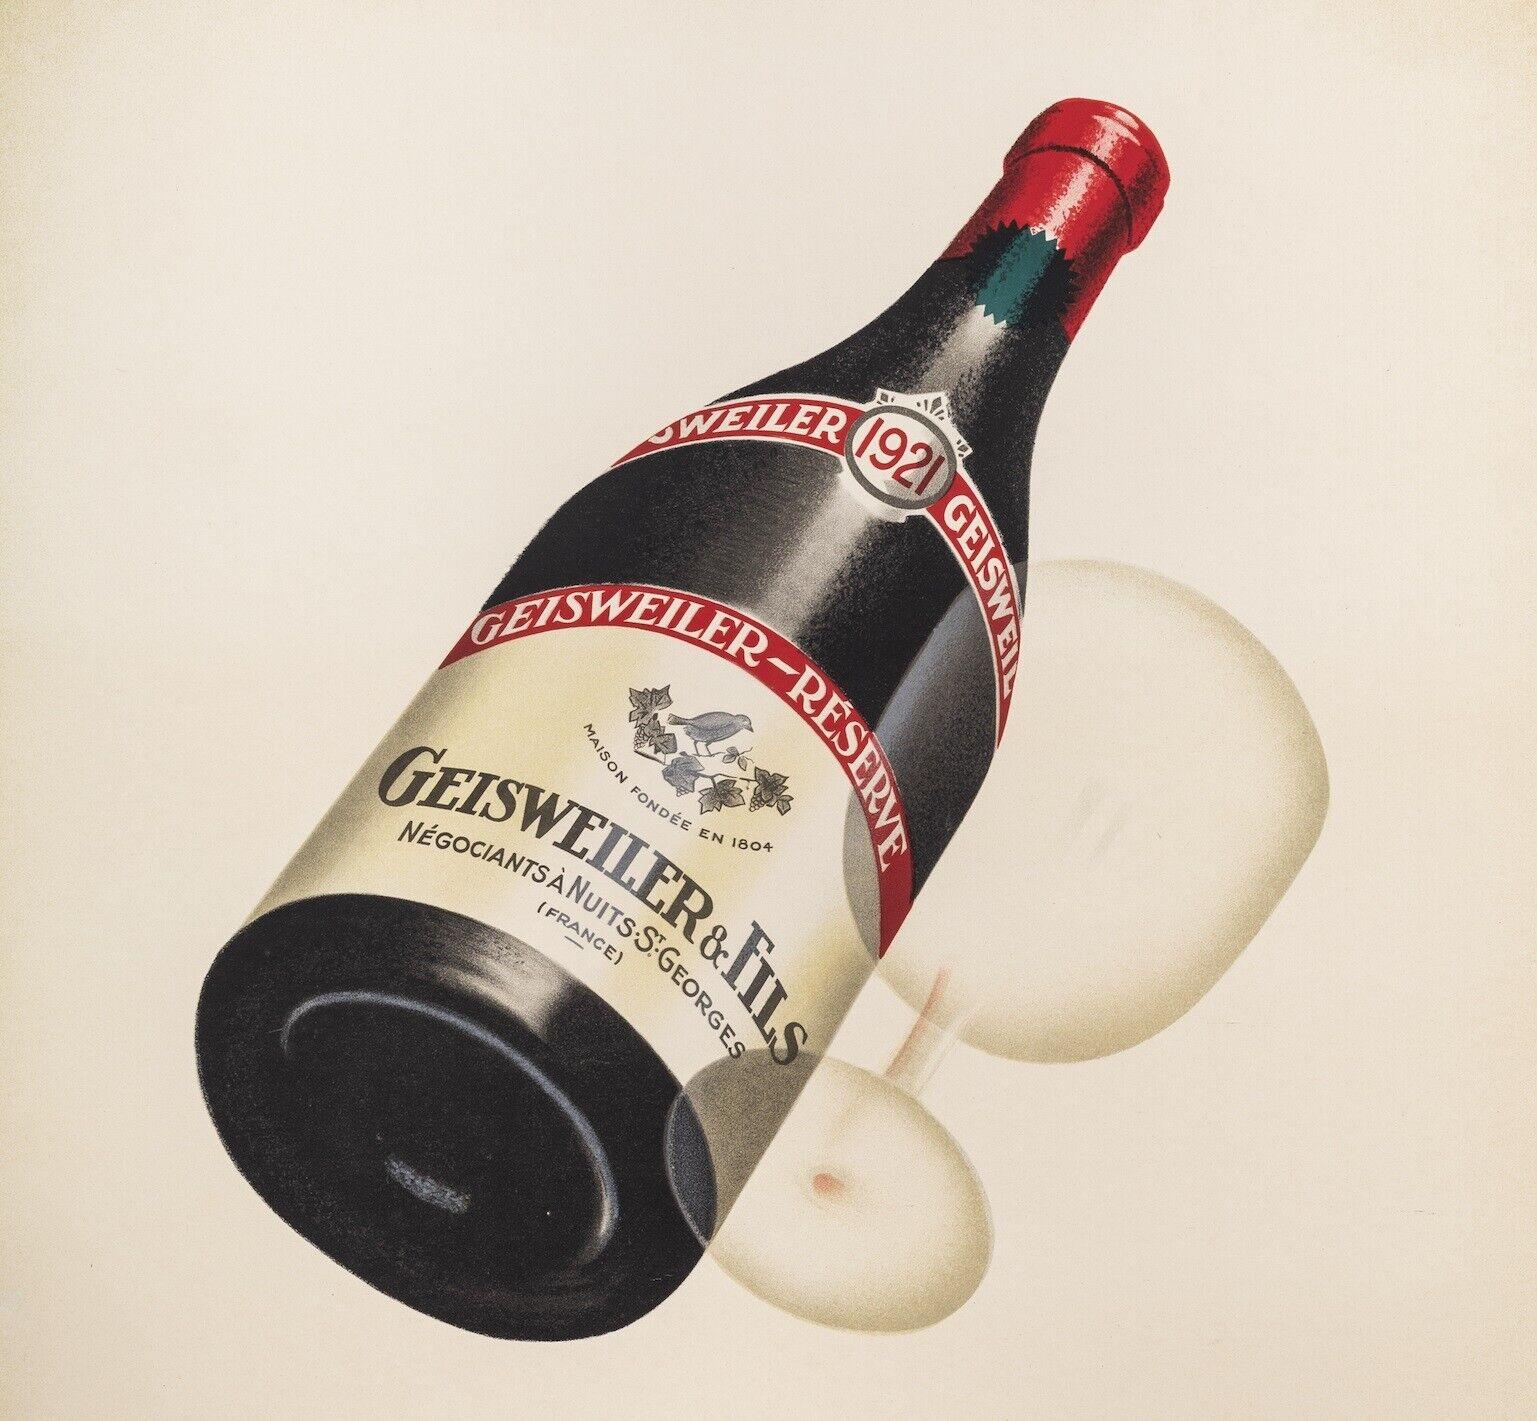 Affiche originale - Marton-Geisweiler, vin de Bourgogne - Nuits St Georges, c.1925.

Affiche pour la promotion du vin Geisweiler produit dans la région de Bourgogne.Geisweiler est un vin mousseux français. Fondée en 1804 par François Geisweiler, la